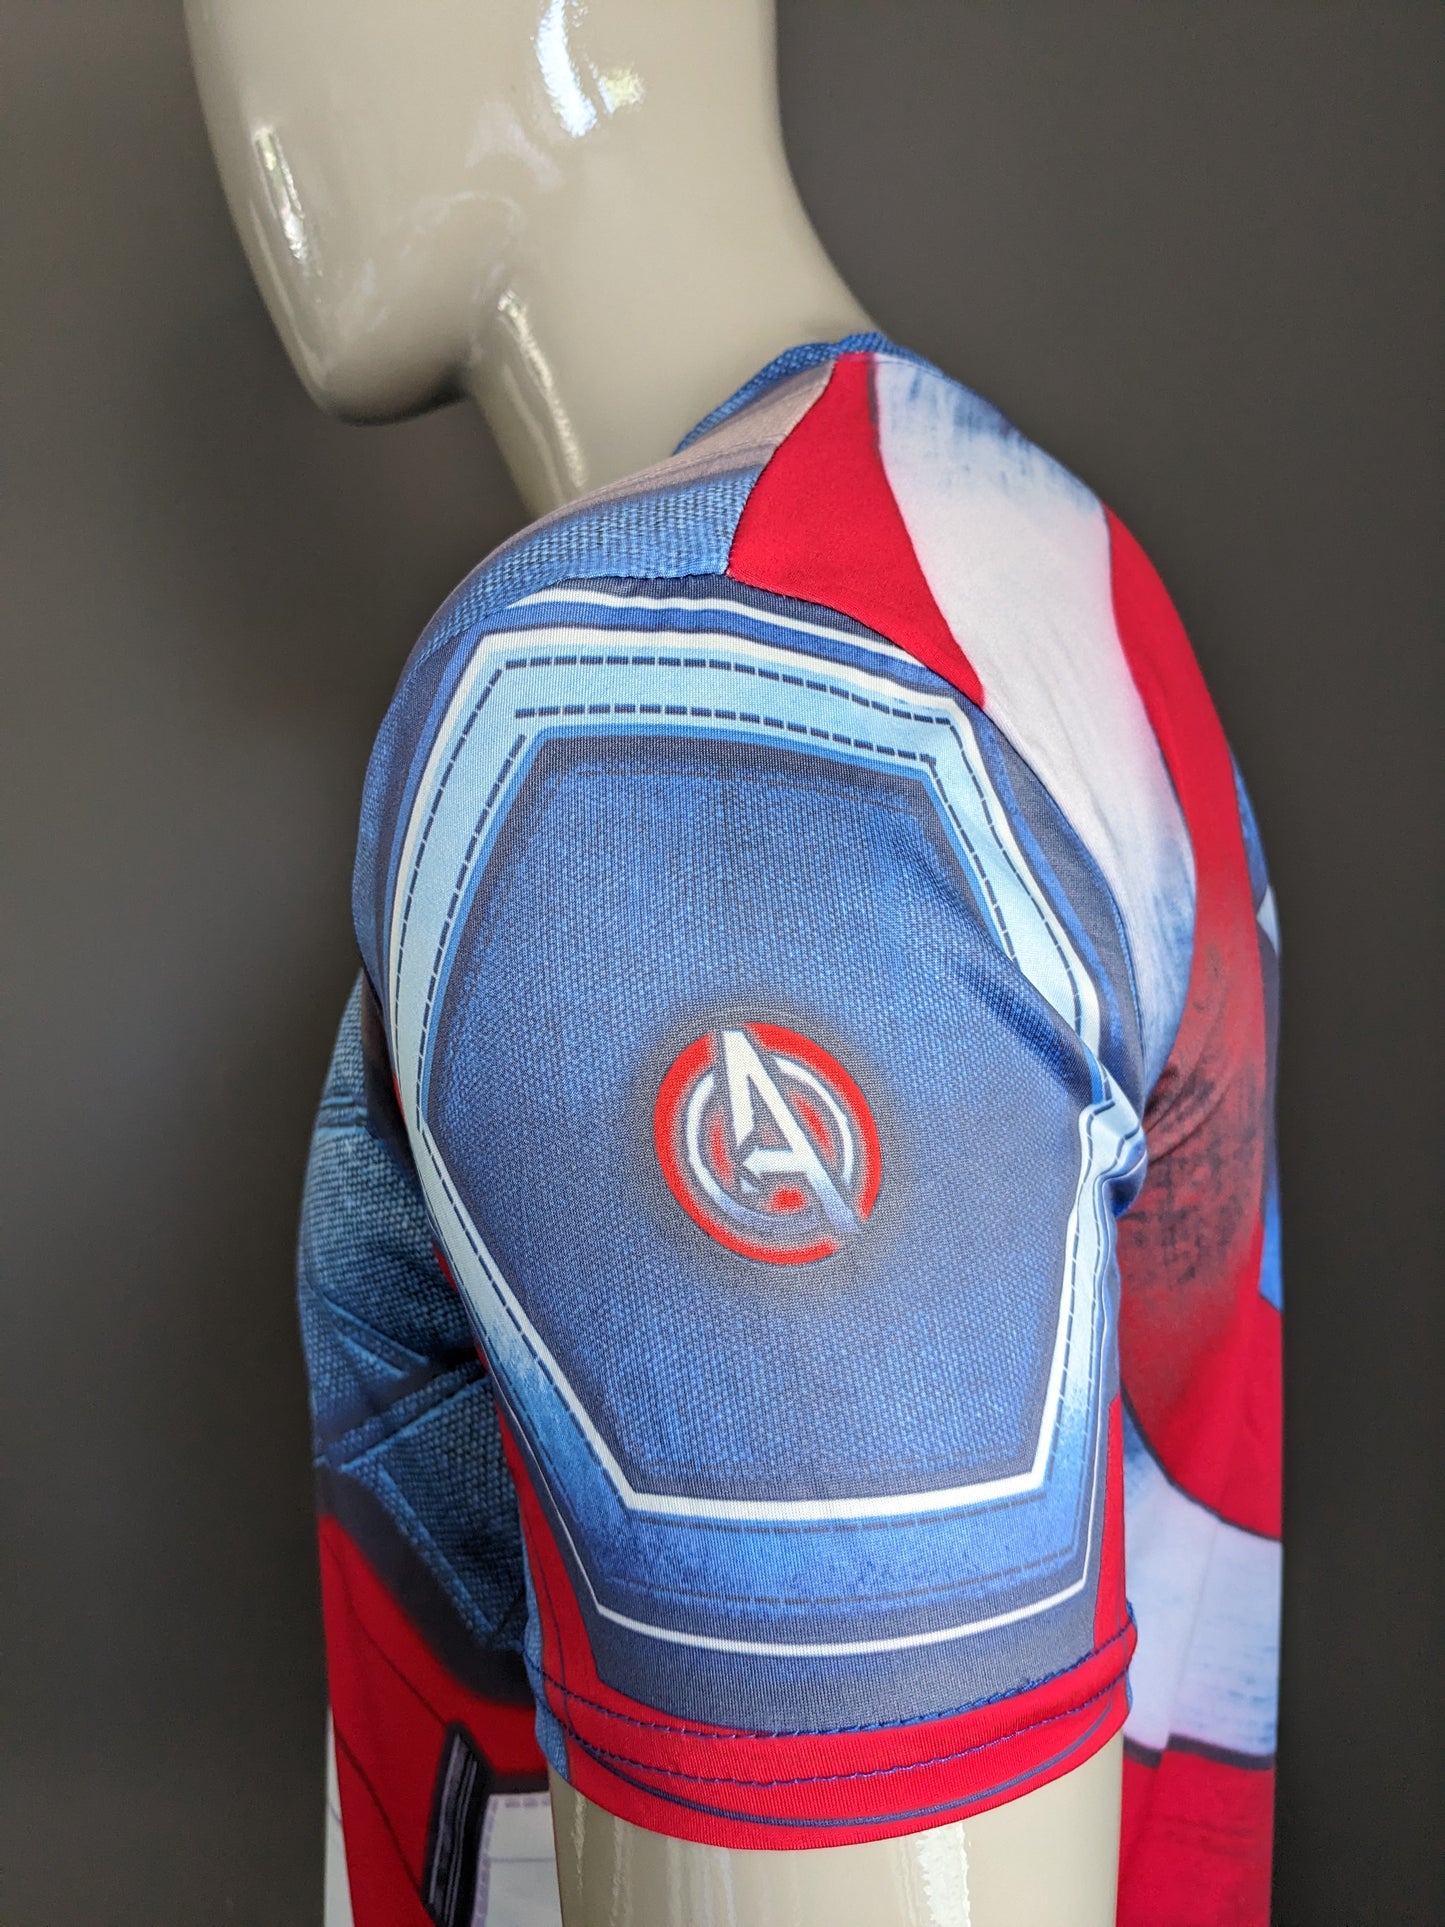 Camicia Captain America. Stampa blu bianca rossa. Taglia M / L. Allungamento.